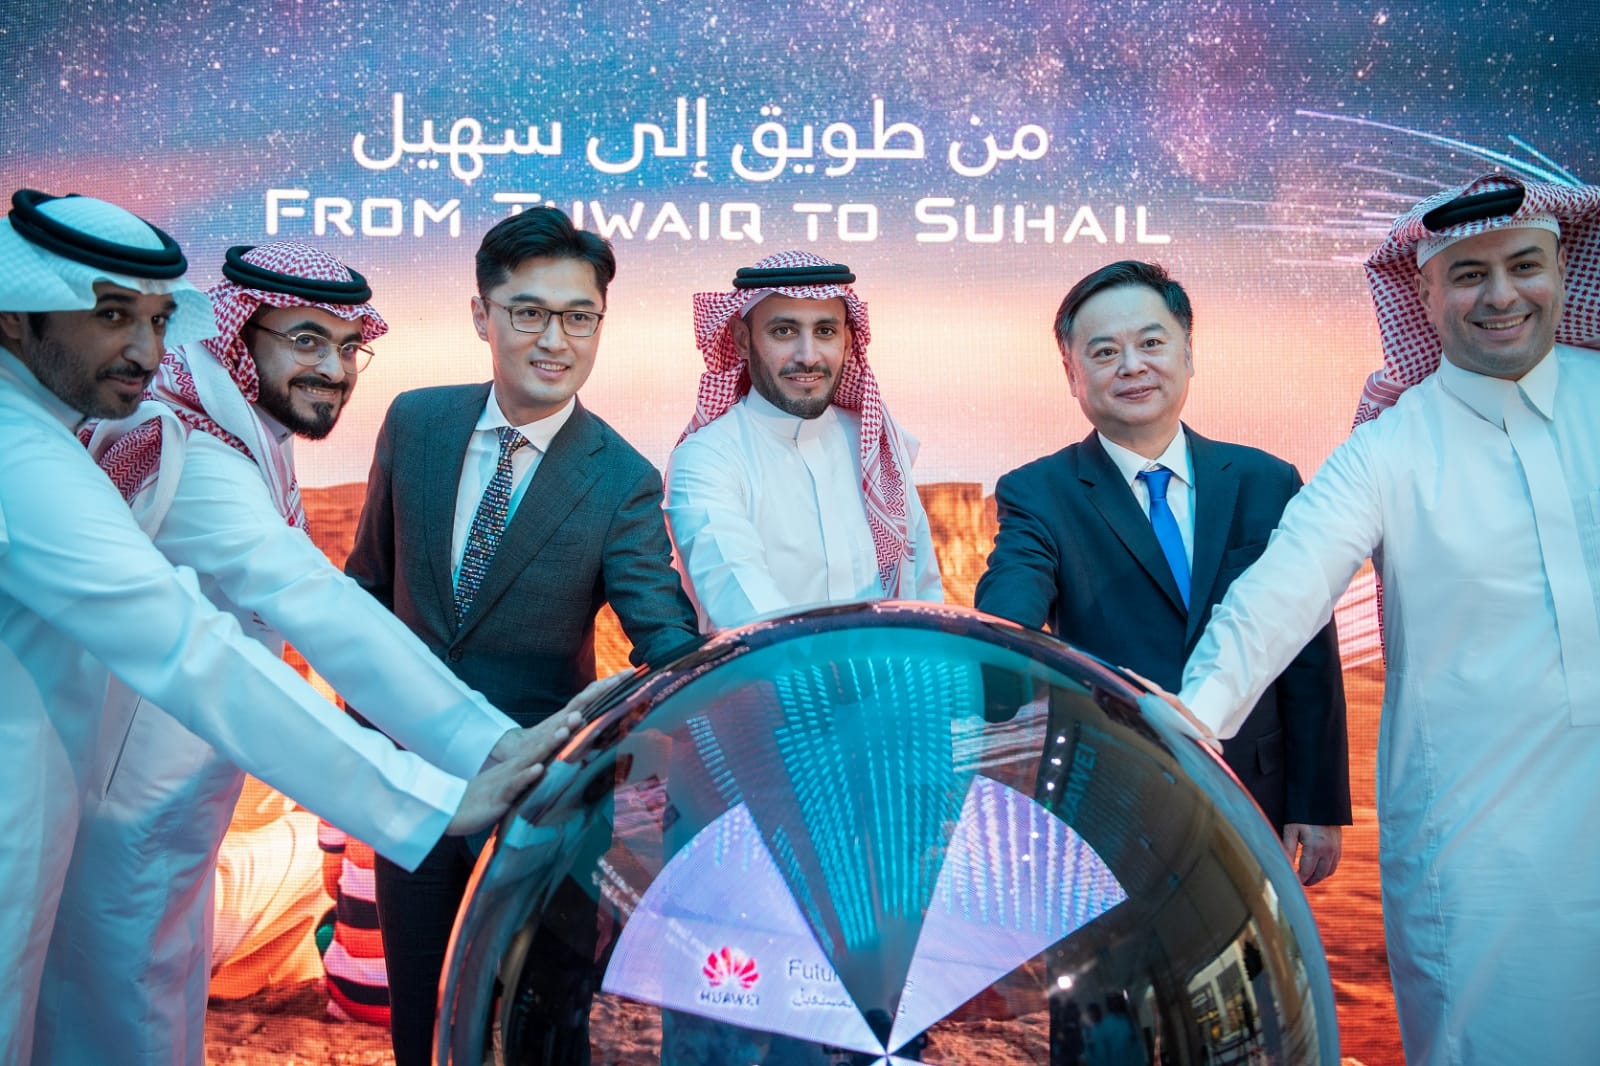 بتنظيم من هواوي الهيئة السعودية للفضاء تشارك في افتتاح مركز فضاء المستقبل وذلك لرفع الوعي بمستقبل الفضاء والتكنولوجيا